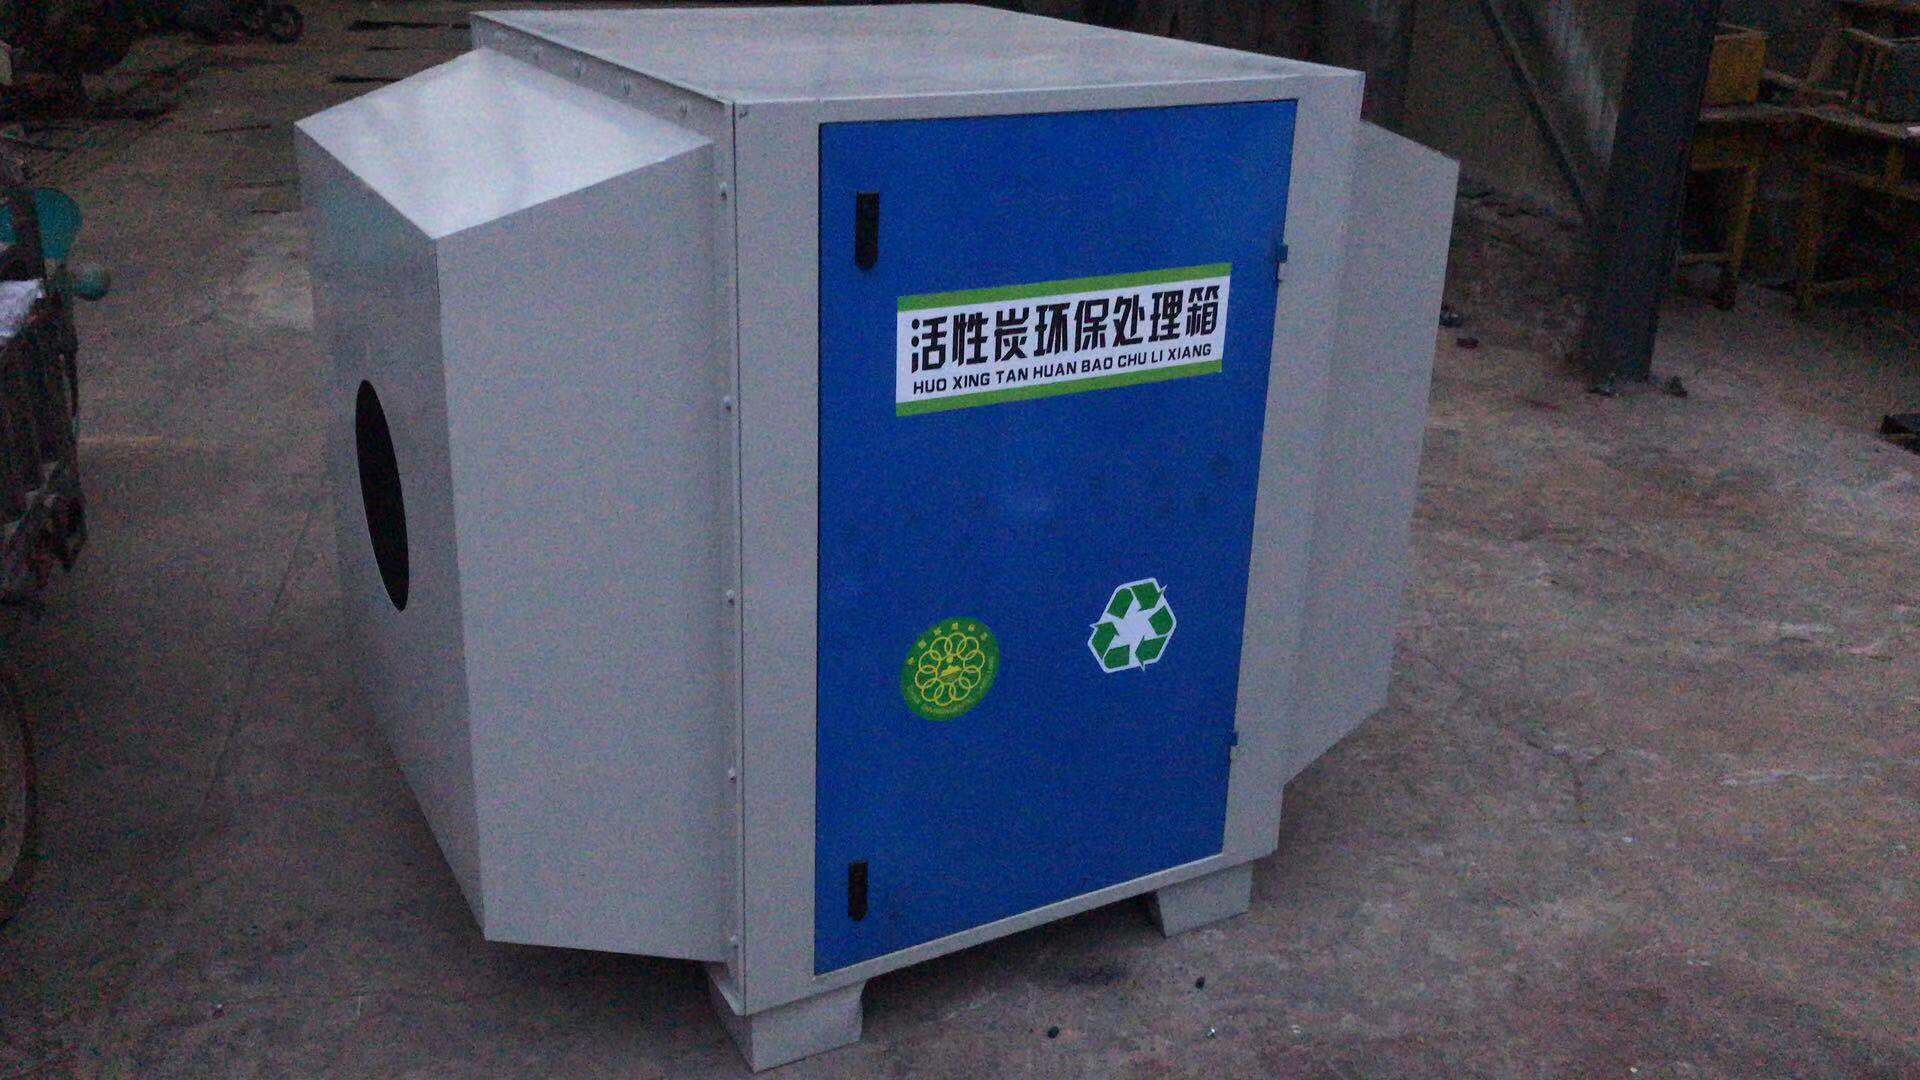 活性炭环保箱活性炭环保箱活性炭废气吸附净化环保箱来自慧硕环保18615565122